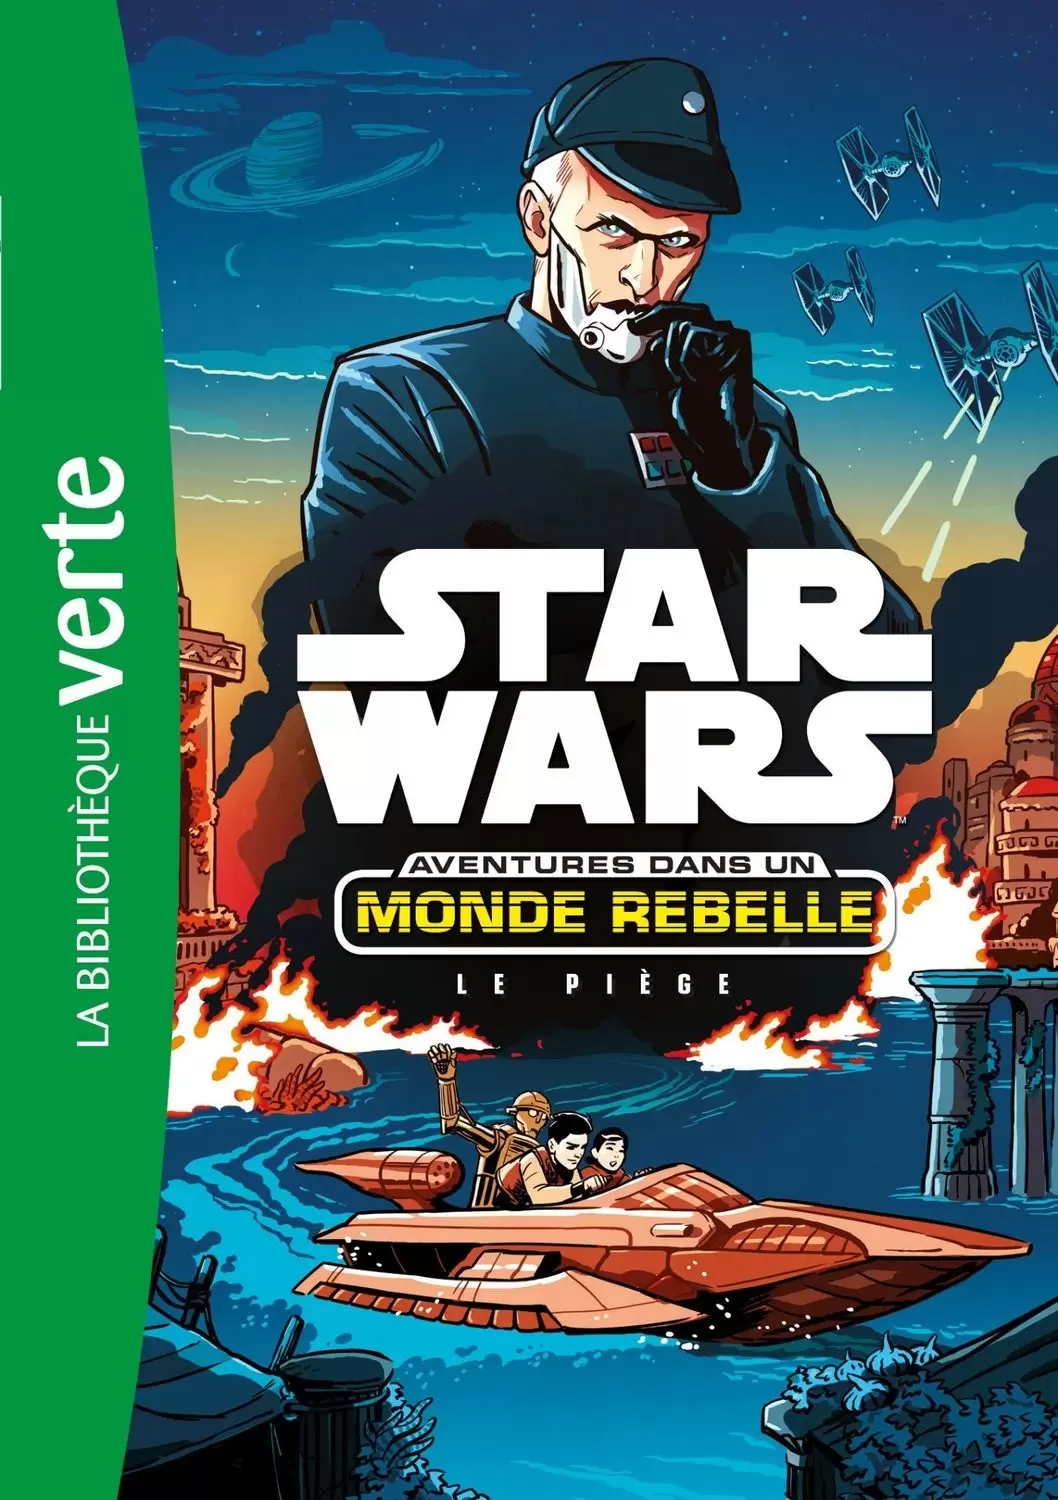 Star Wars - Aventures dans un Monde Rebelle - Le piège